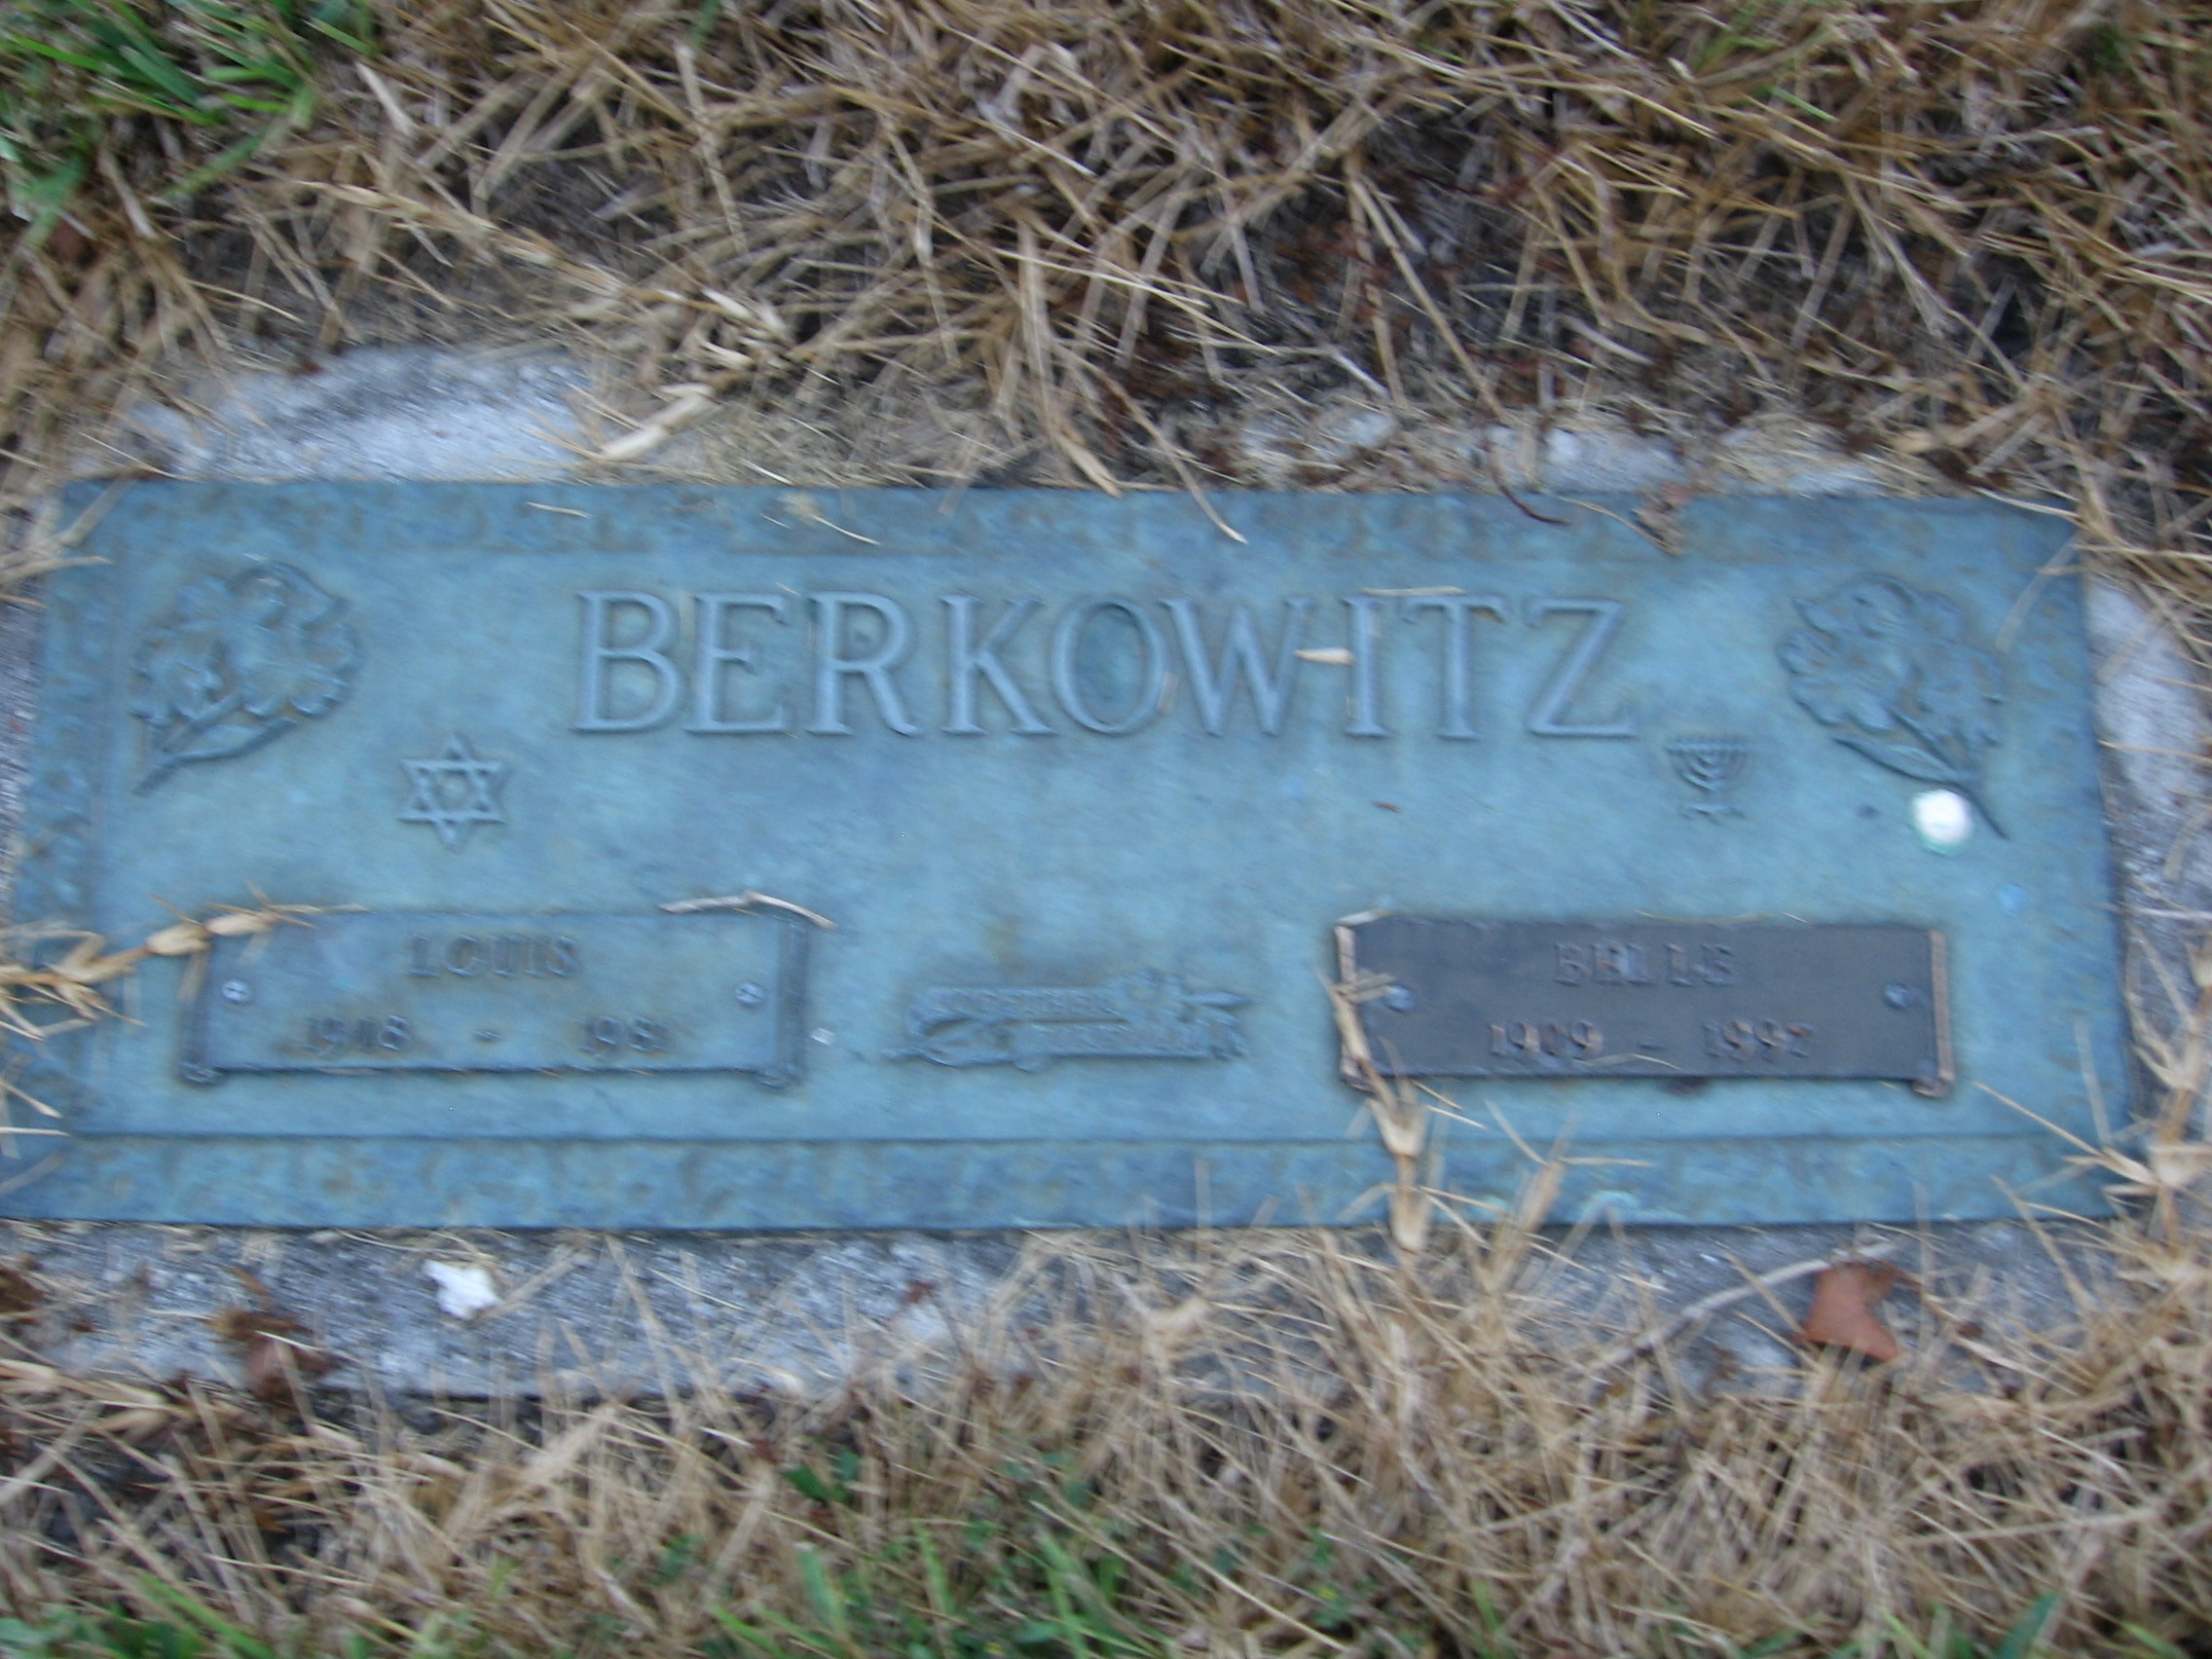 Belle Berkowitz